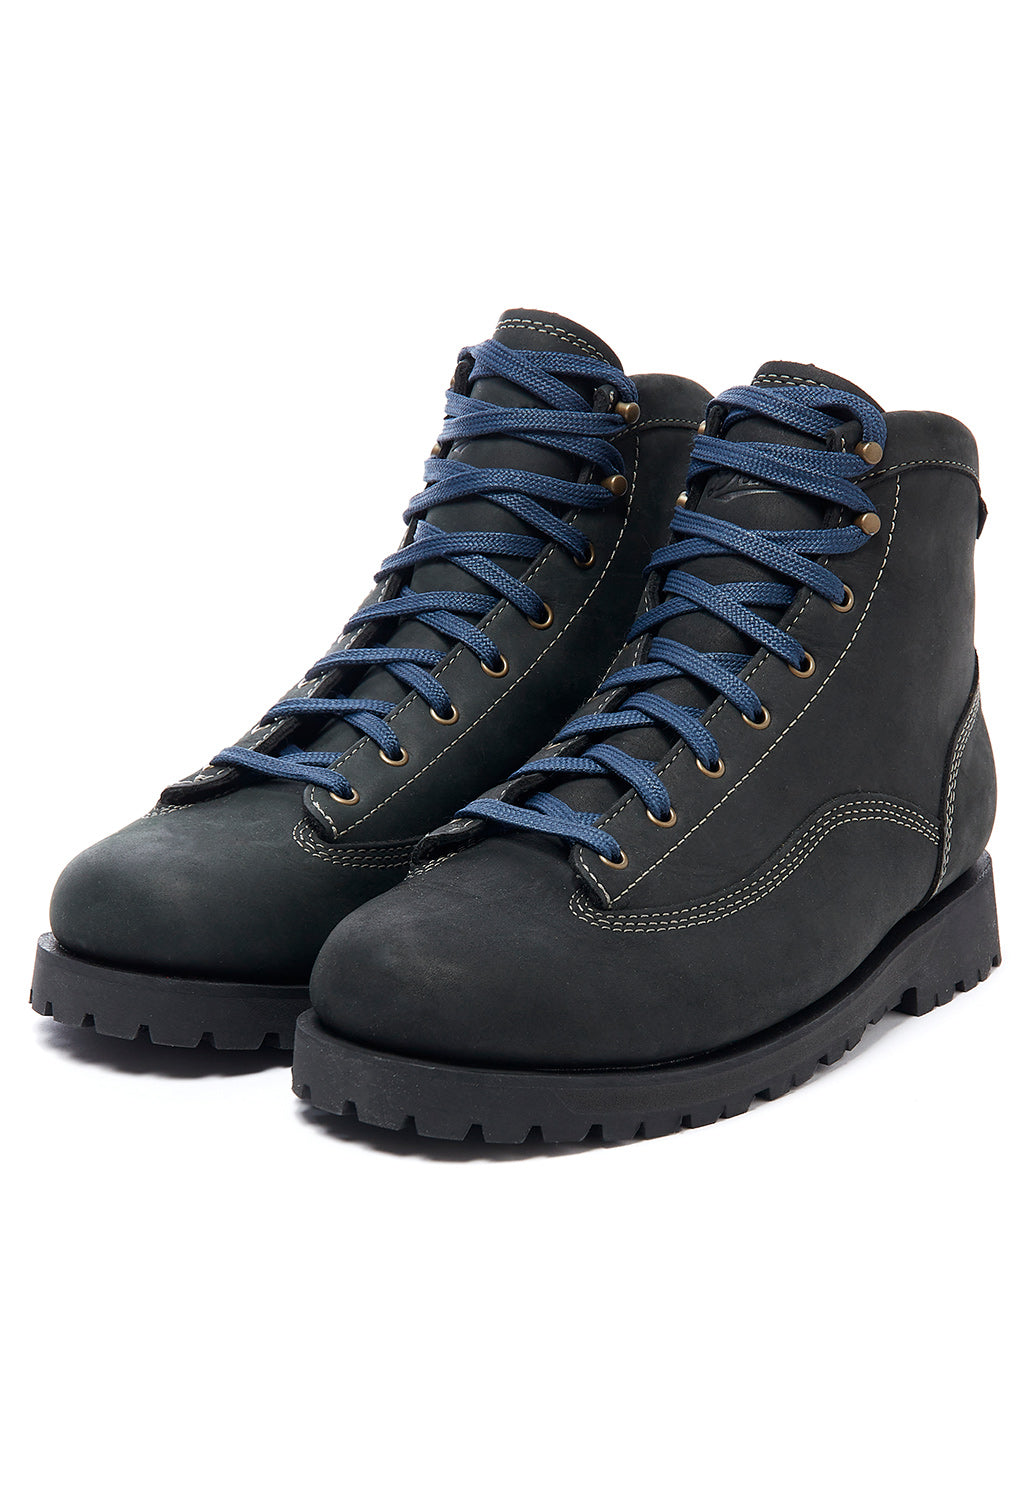 Danner Men's Cedar Grove Boots - Black GTX – Outsiders Store UK